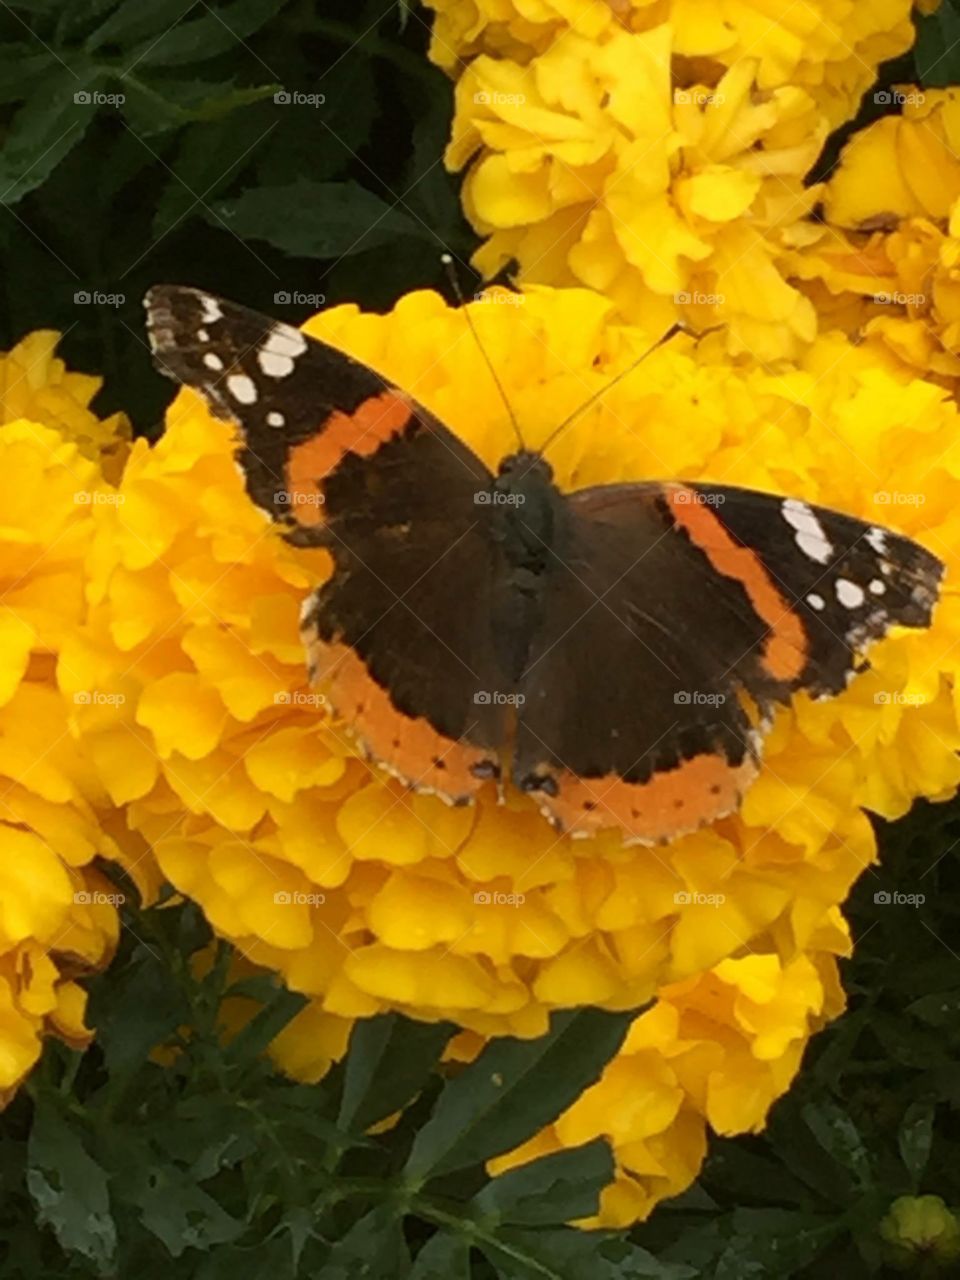 Butterfly monarch 